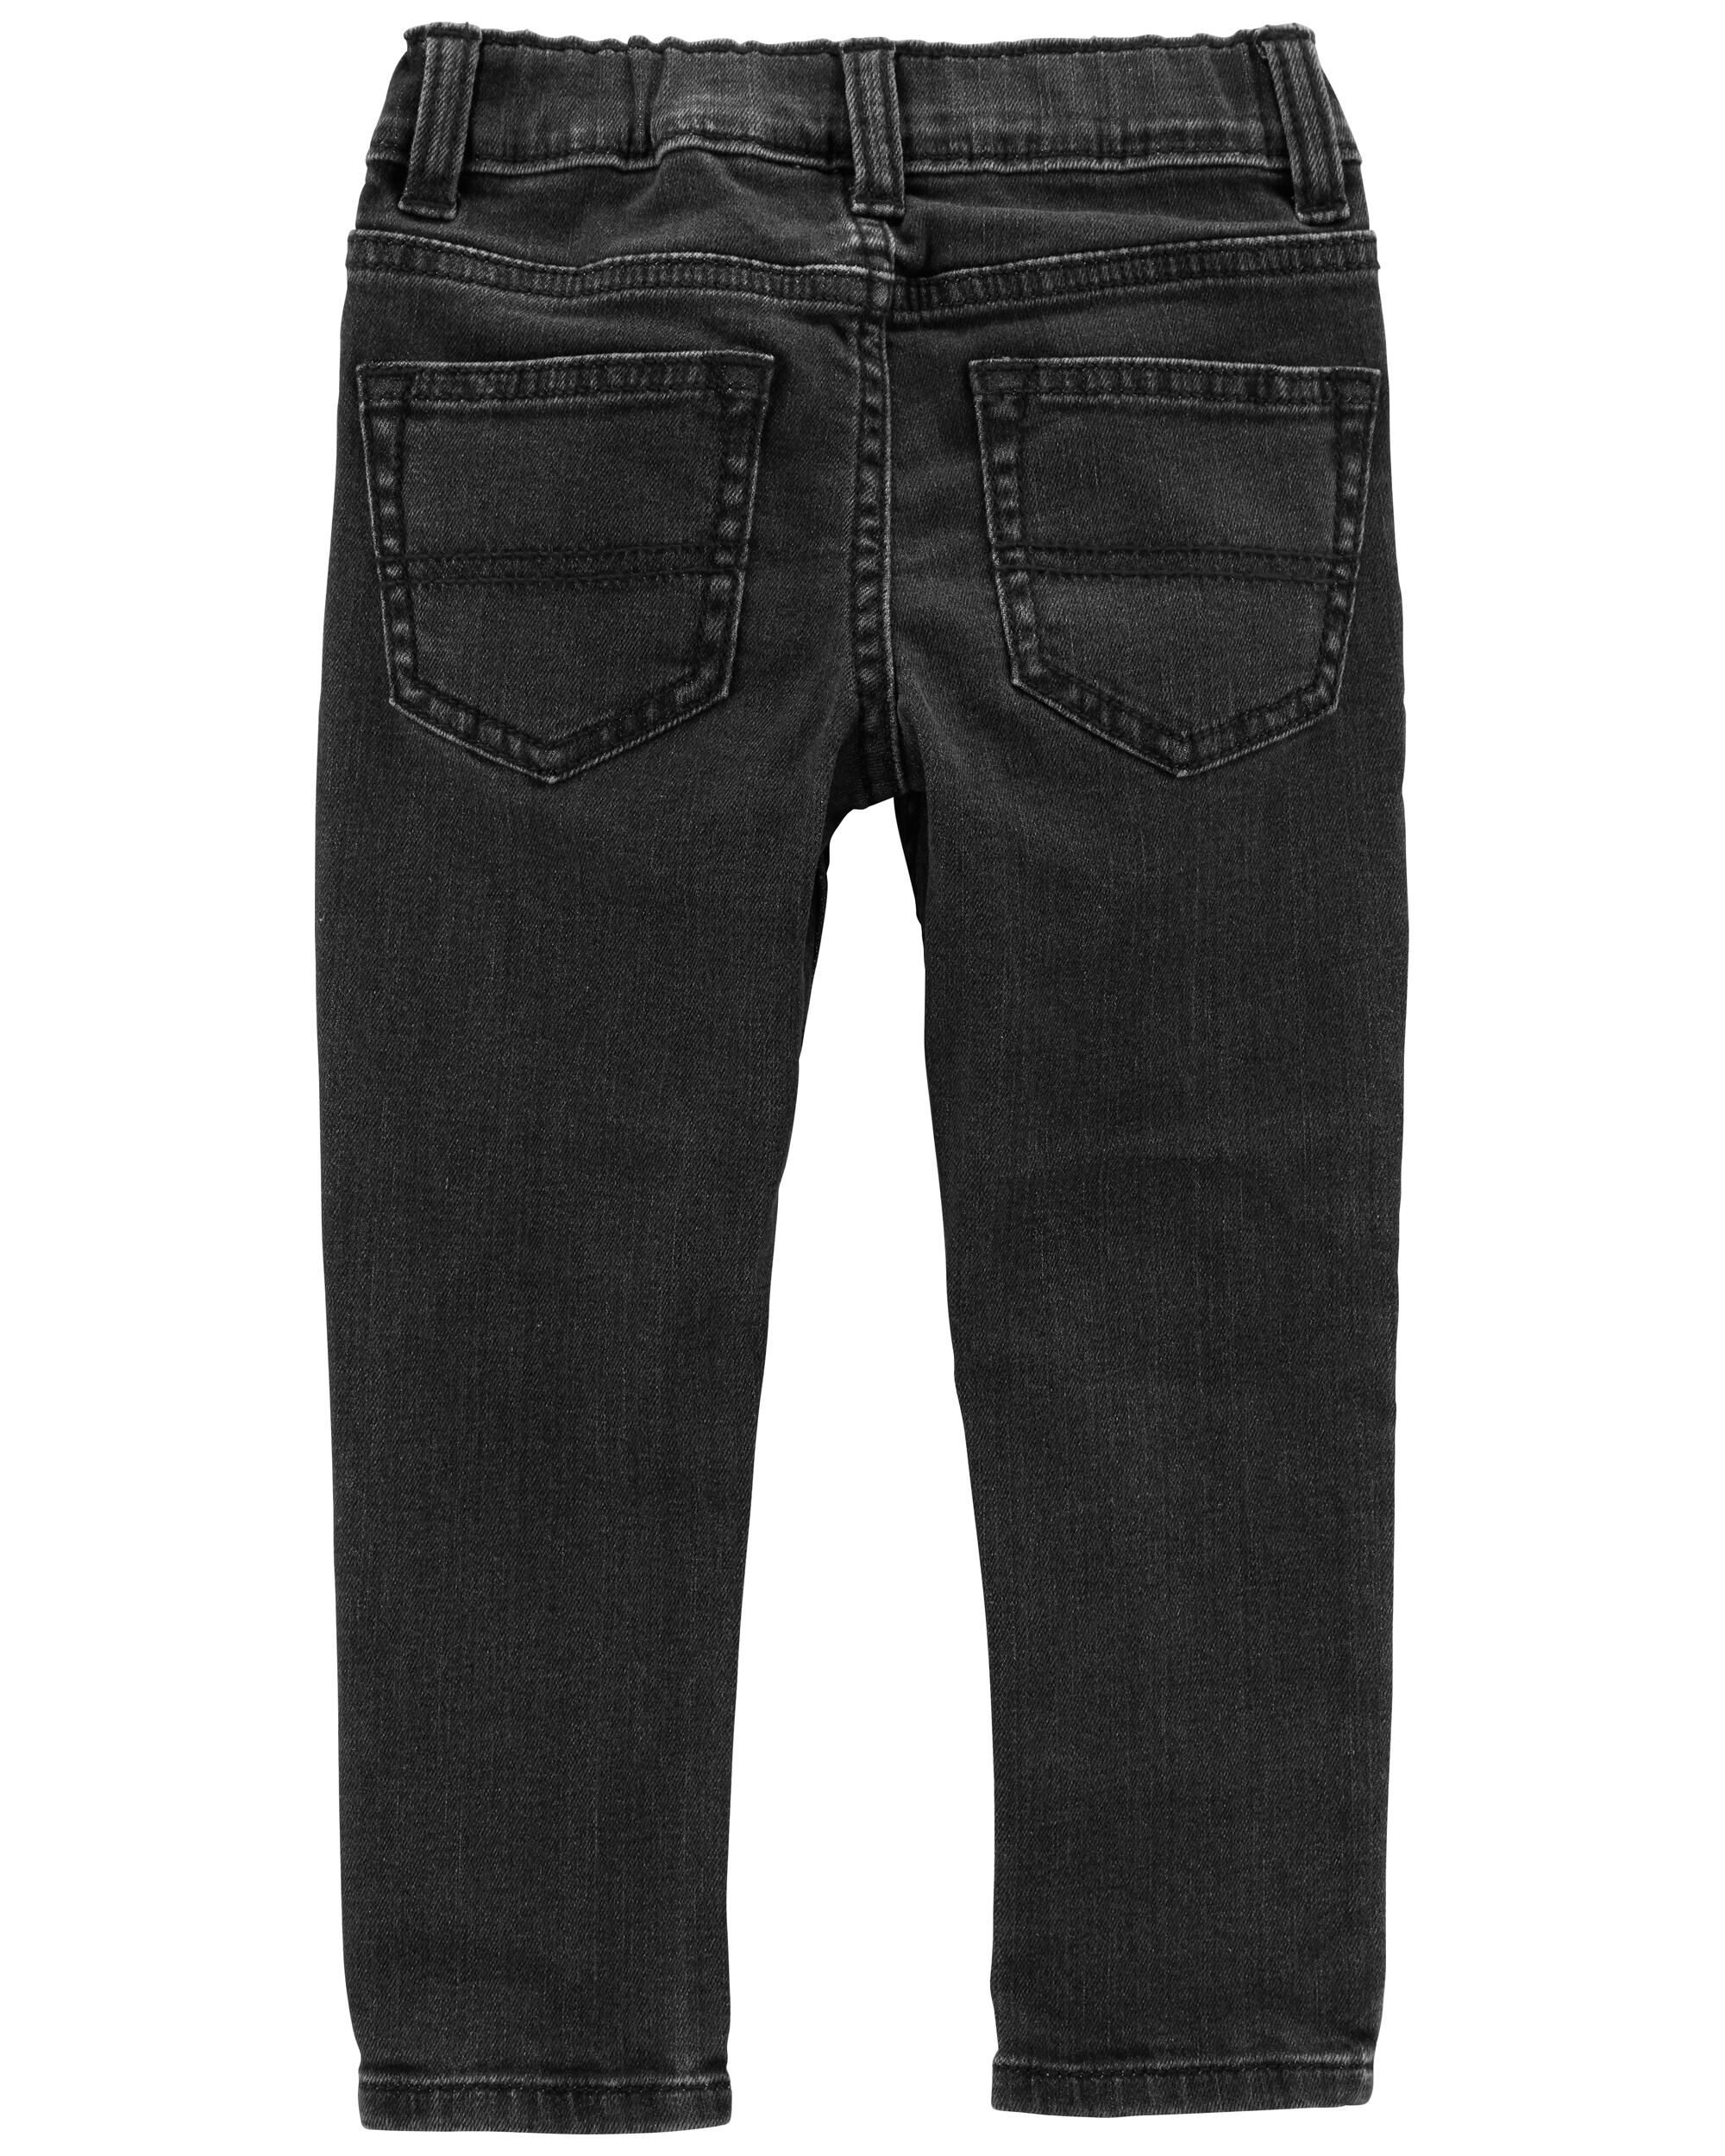 3T Vintage 80s 90s Jordache Kids Denim Cotton Elastic Jeans Black 